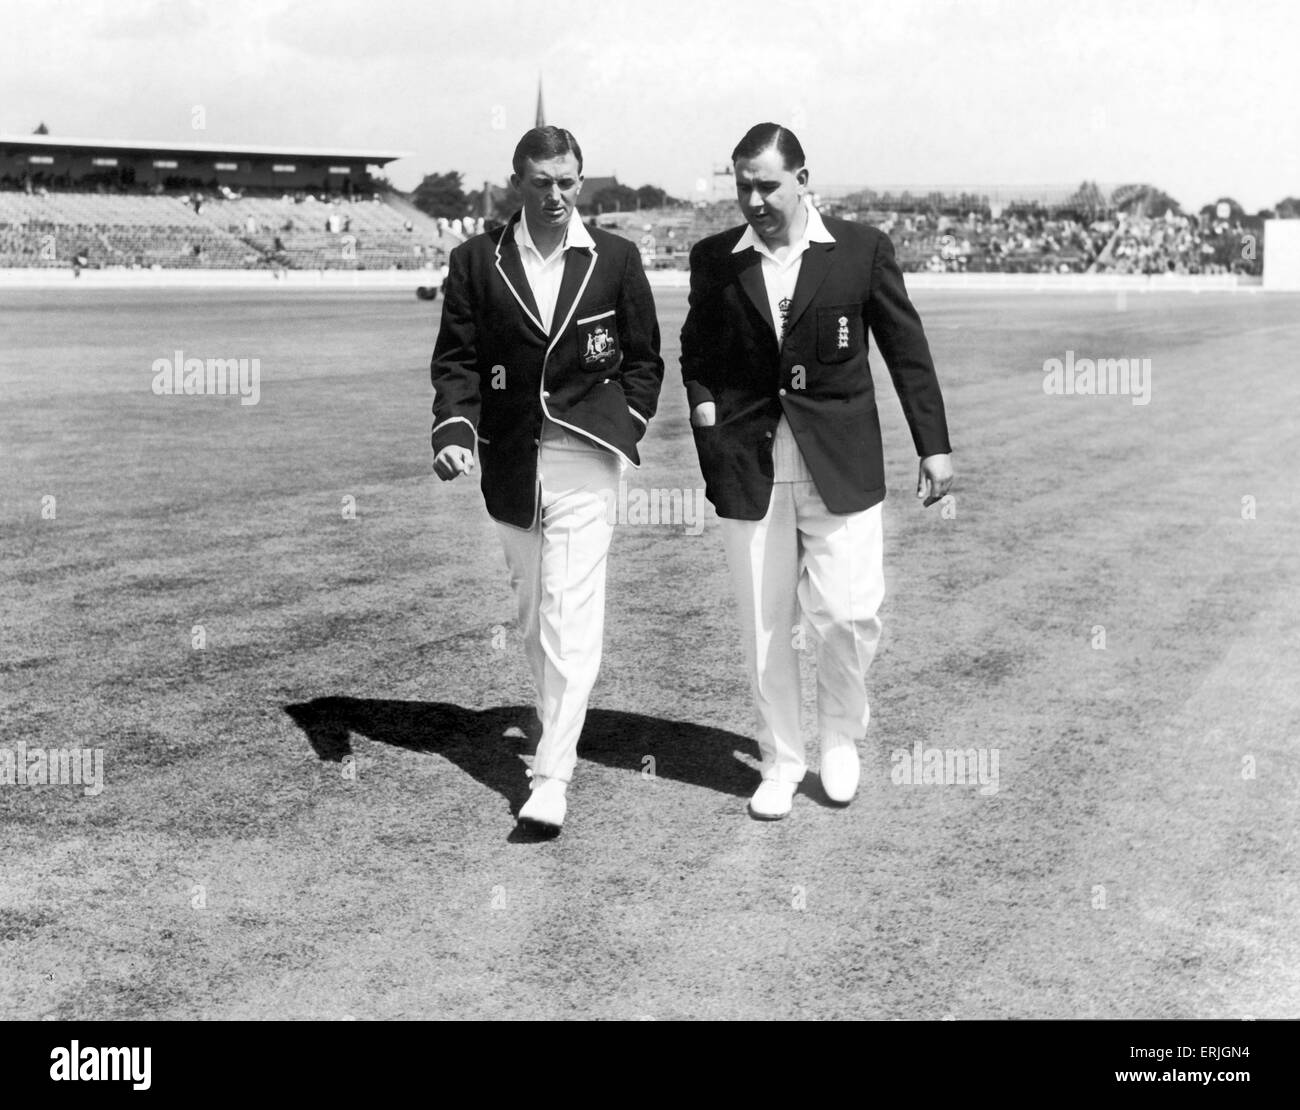 Australische Cricket-Tour von England für die Asche. England V Australien erste Testspiel bei Edgbaston. die beiden Kapitäne inspizieren das Spielfeld vor dem Spiel.  Sie sind Richie Benaud Australiens (links) und Colin Cowdrey von England.  Juni 1961. Stockfoto